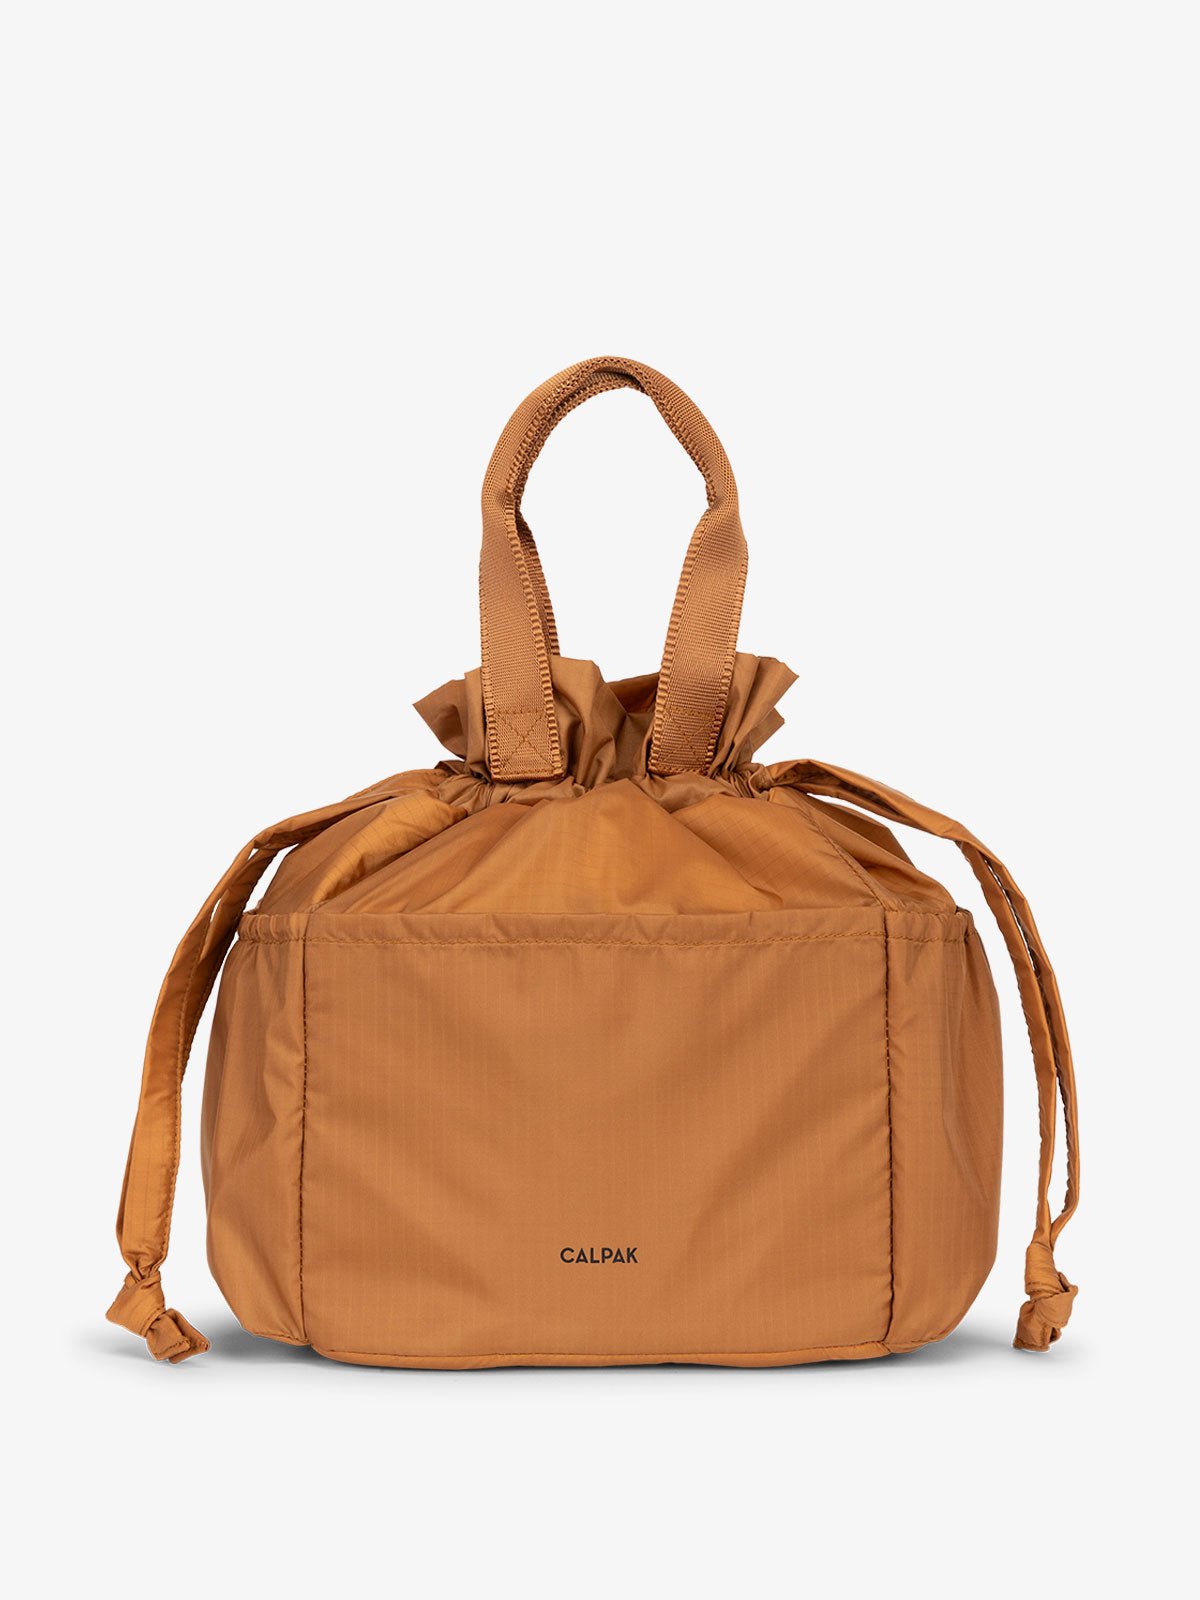 CALPAK lunch bag in brown